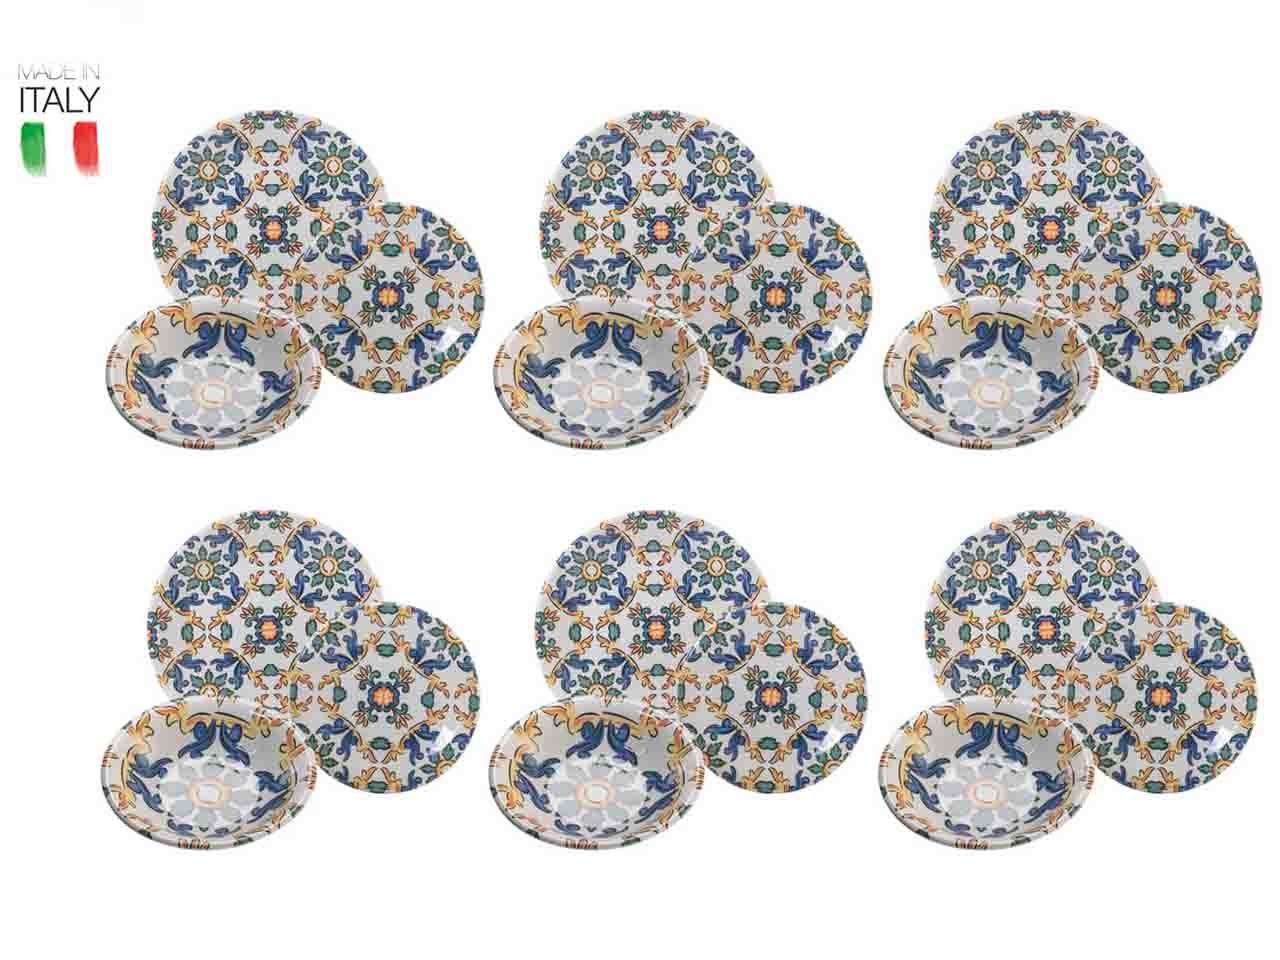 Servizio tavola Palazzo Palermo 18 pezzi in ceramica -4